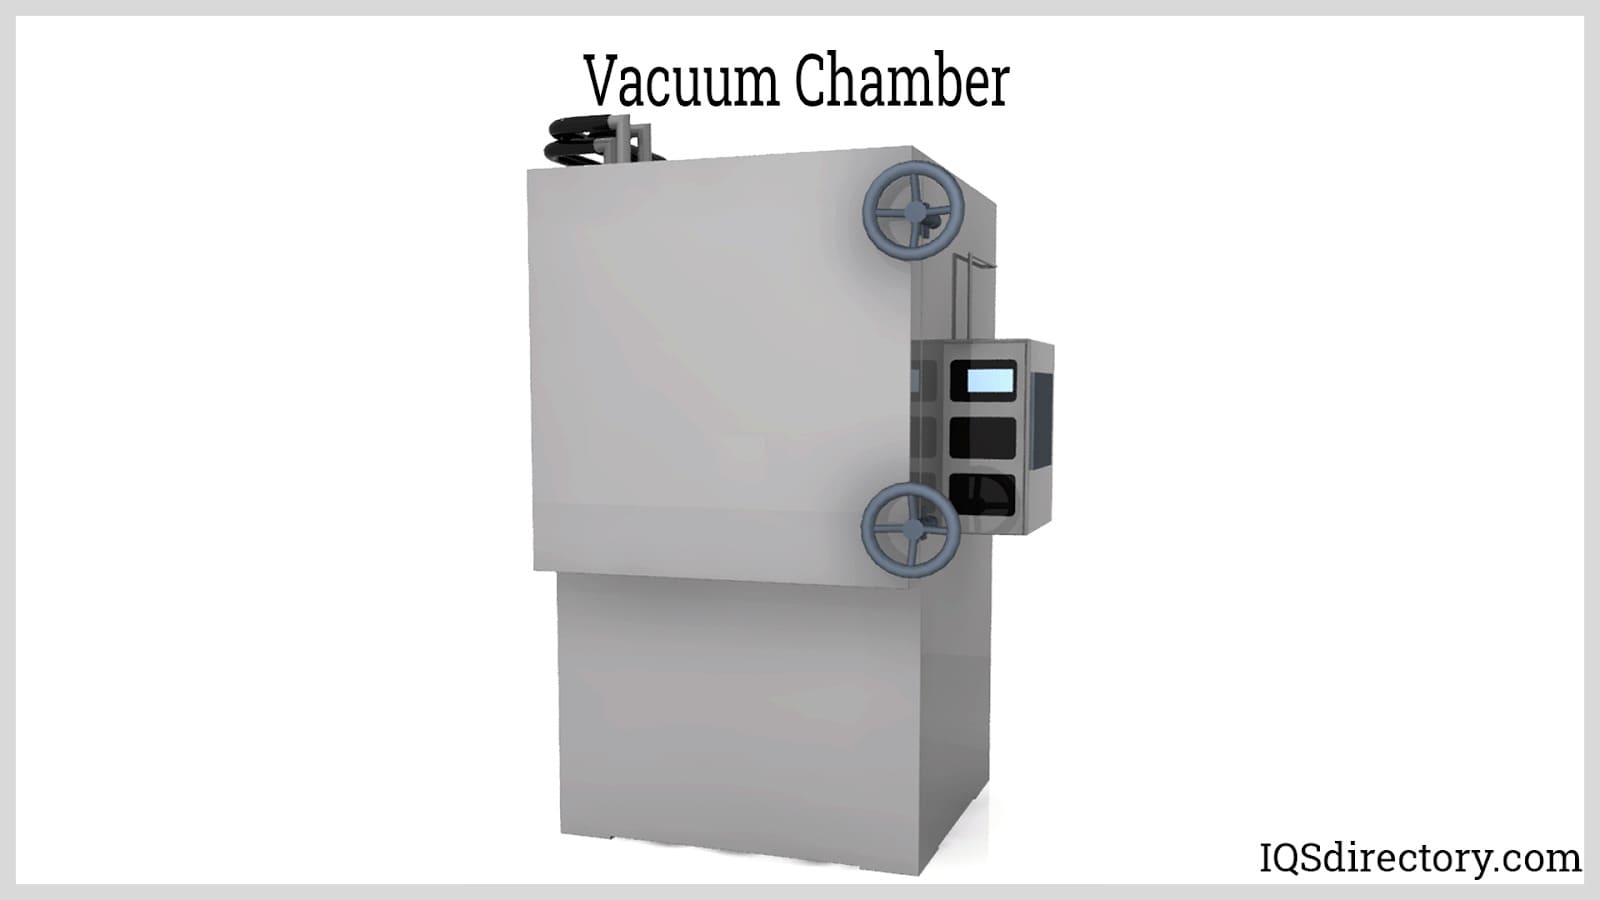 Vacuum Chambers